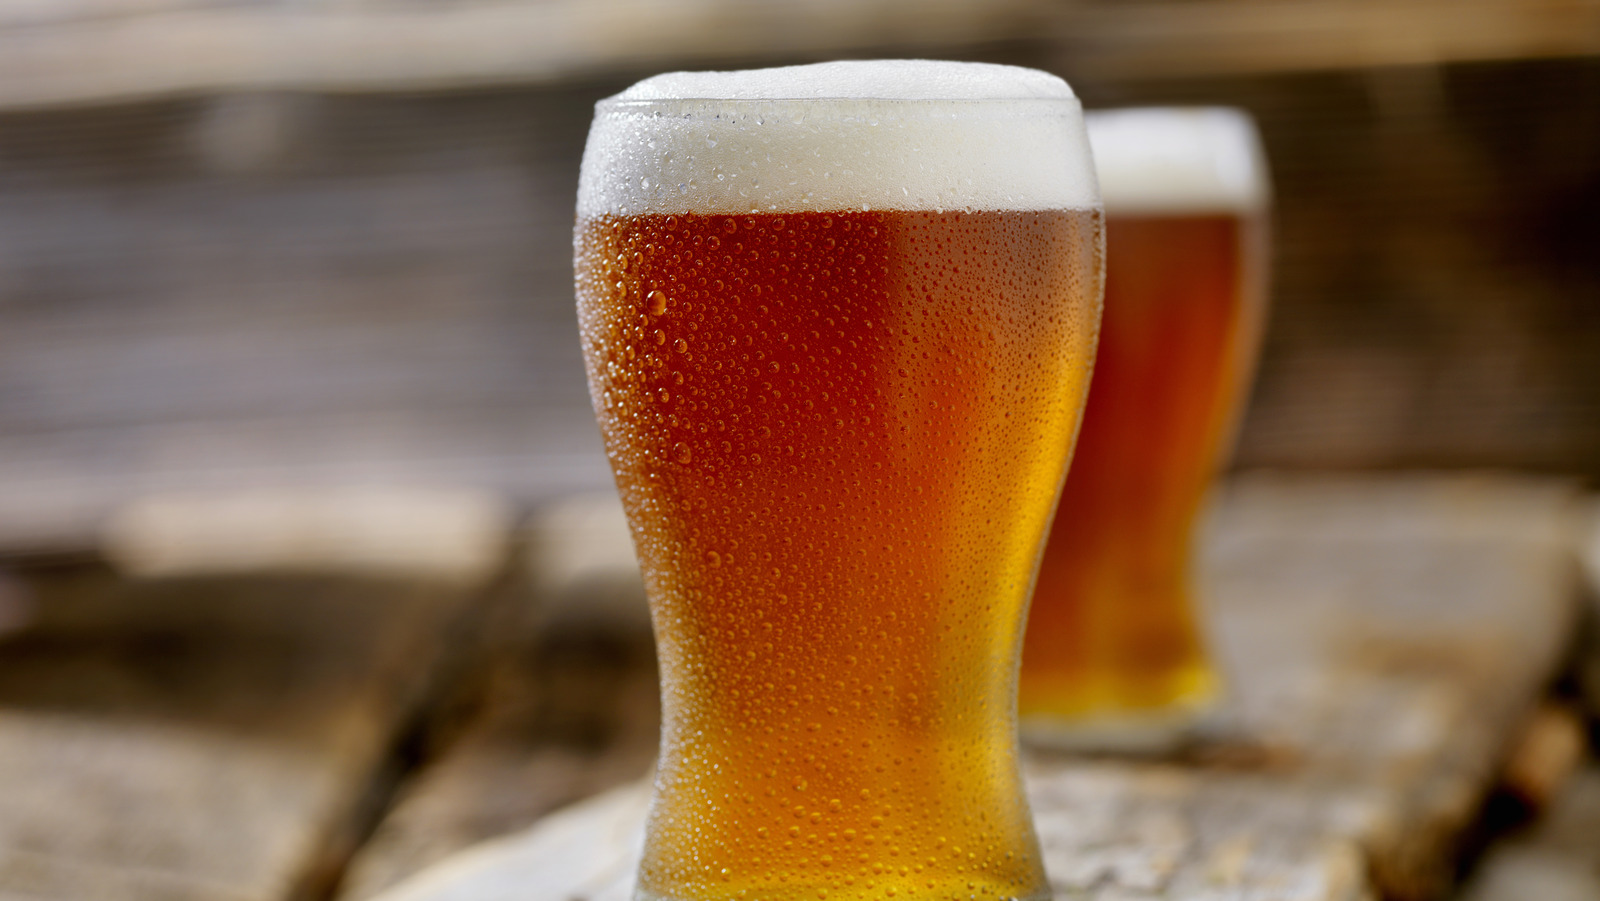 Las cervezas “artesanales” que en realidad pertenecen a Anheuser-Busch